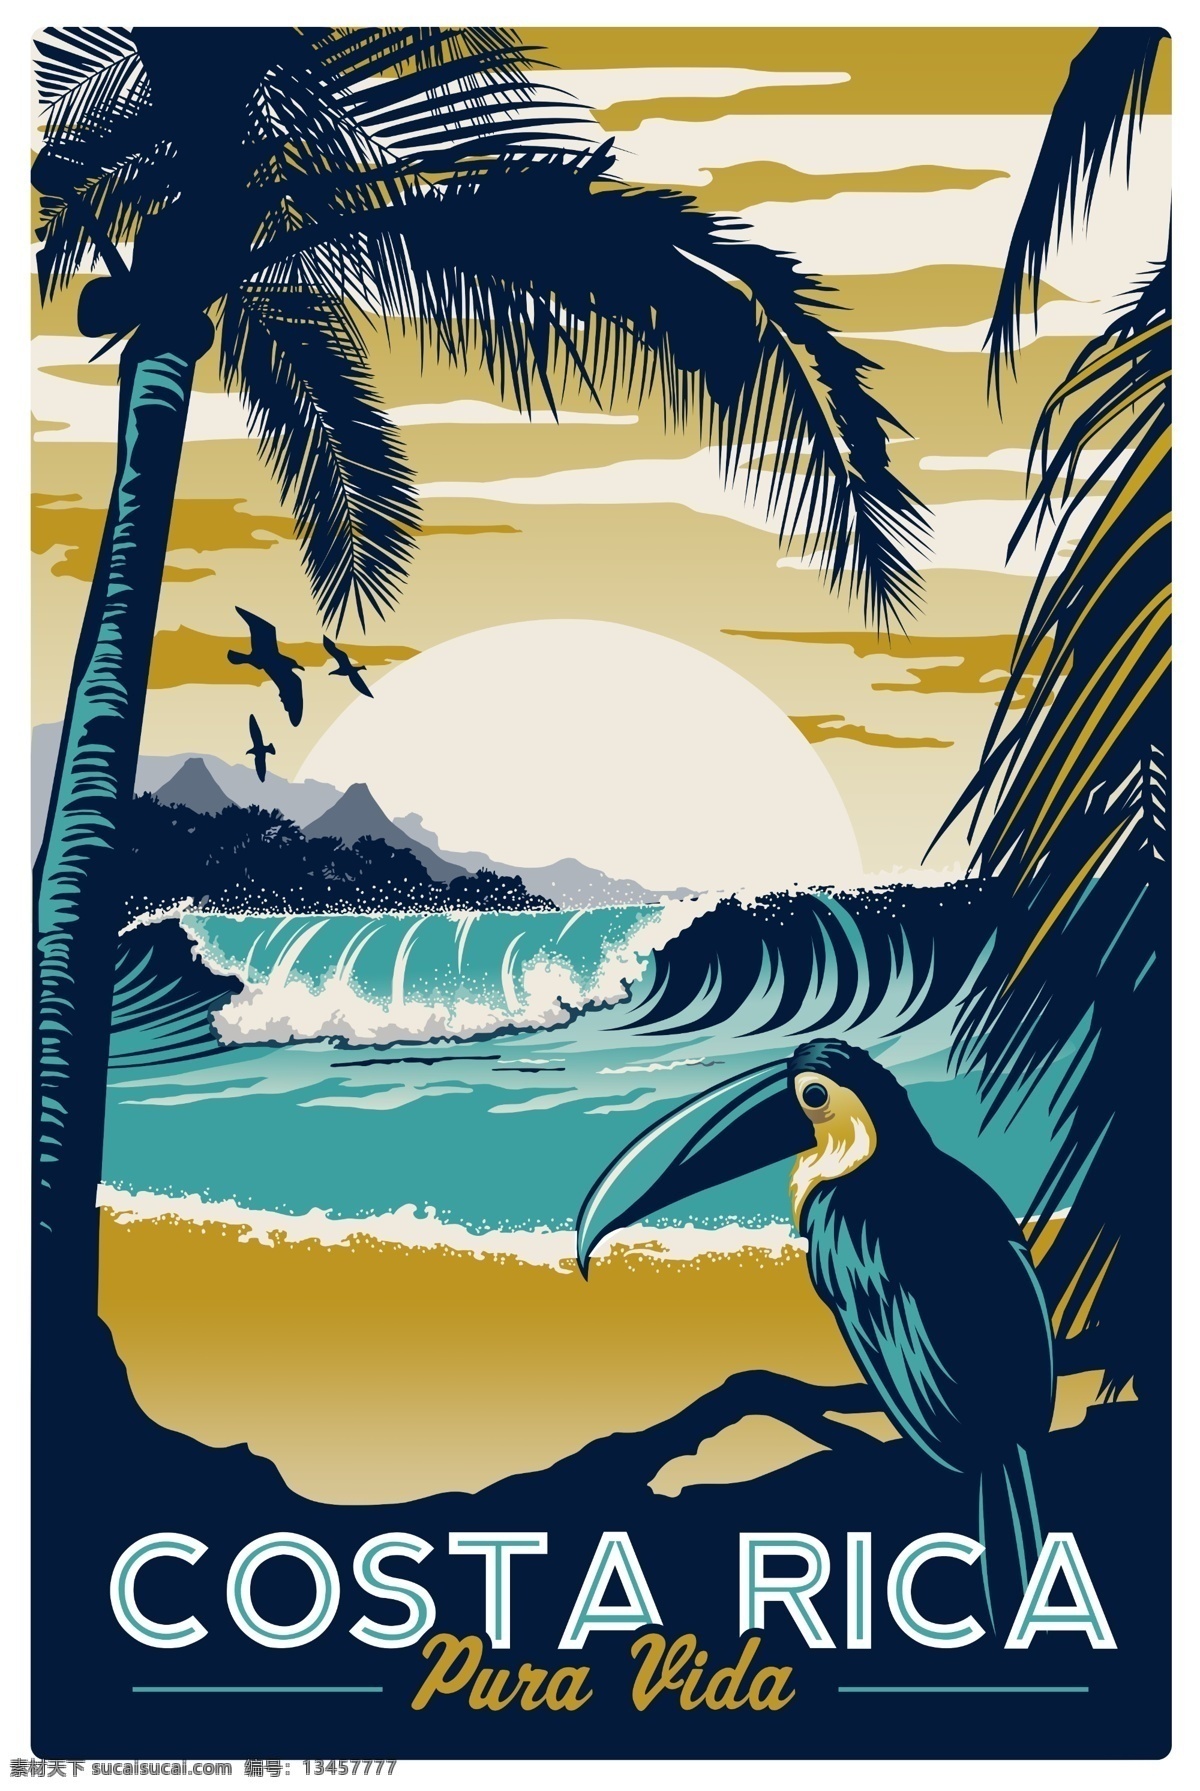 装饰 色彩 风景 版画 岸边 沙滩 海报 彩色 艺术 招贴 海 岸 海边 船 椰树 鸟 浪 小镇 广告 画 手绘 文化艺术 绘画书法